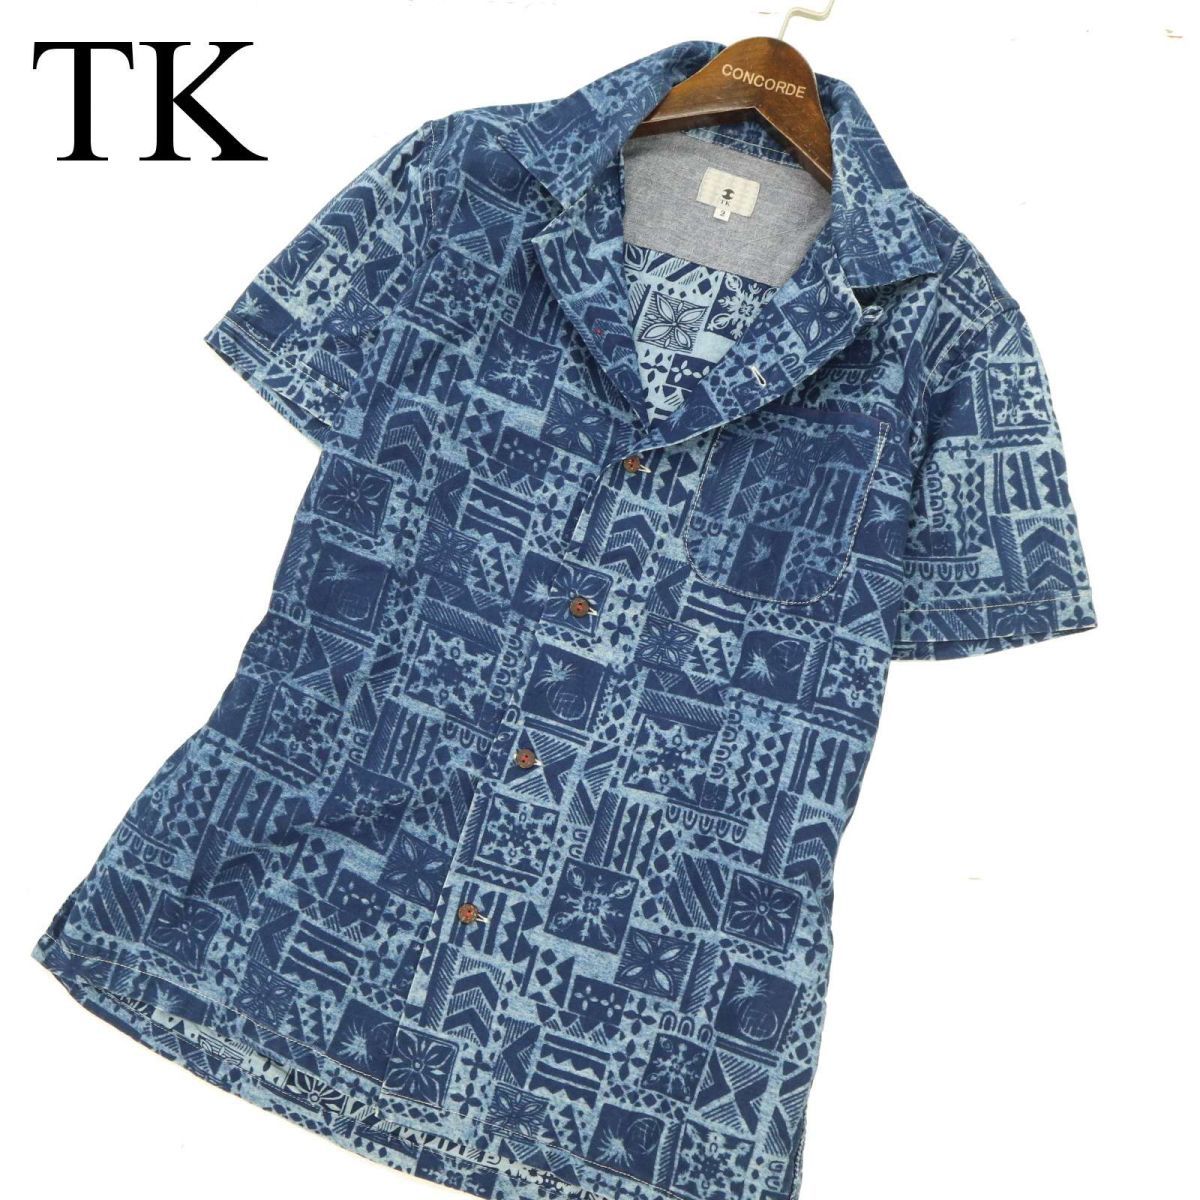 TK Takeo Kikuchi spring summer short sleeves total pattern * indigo shirt Sz.2 men's navy made in Japan C3T06186_7#A